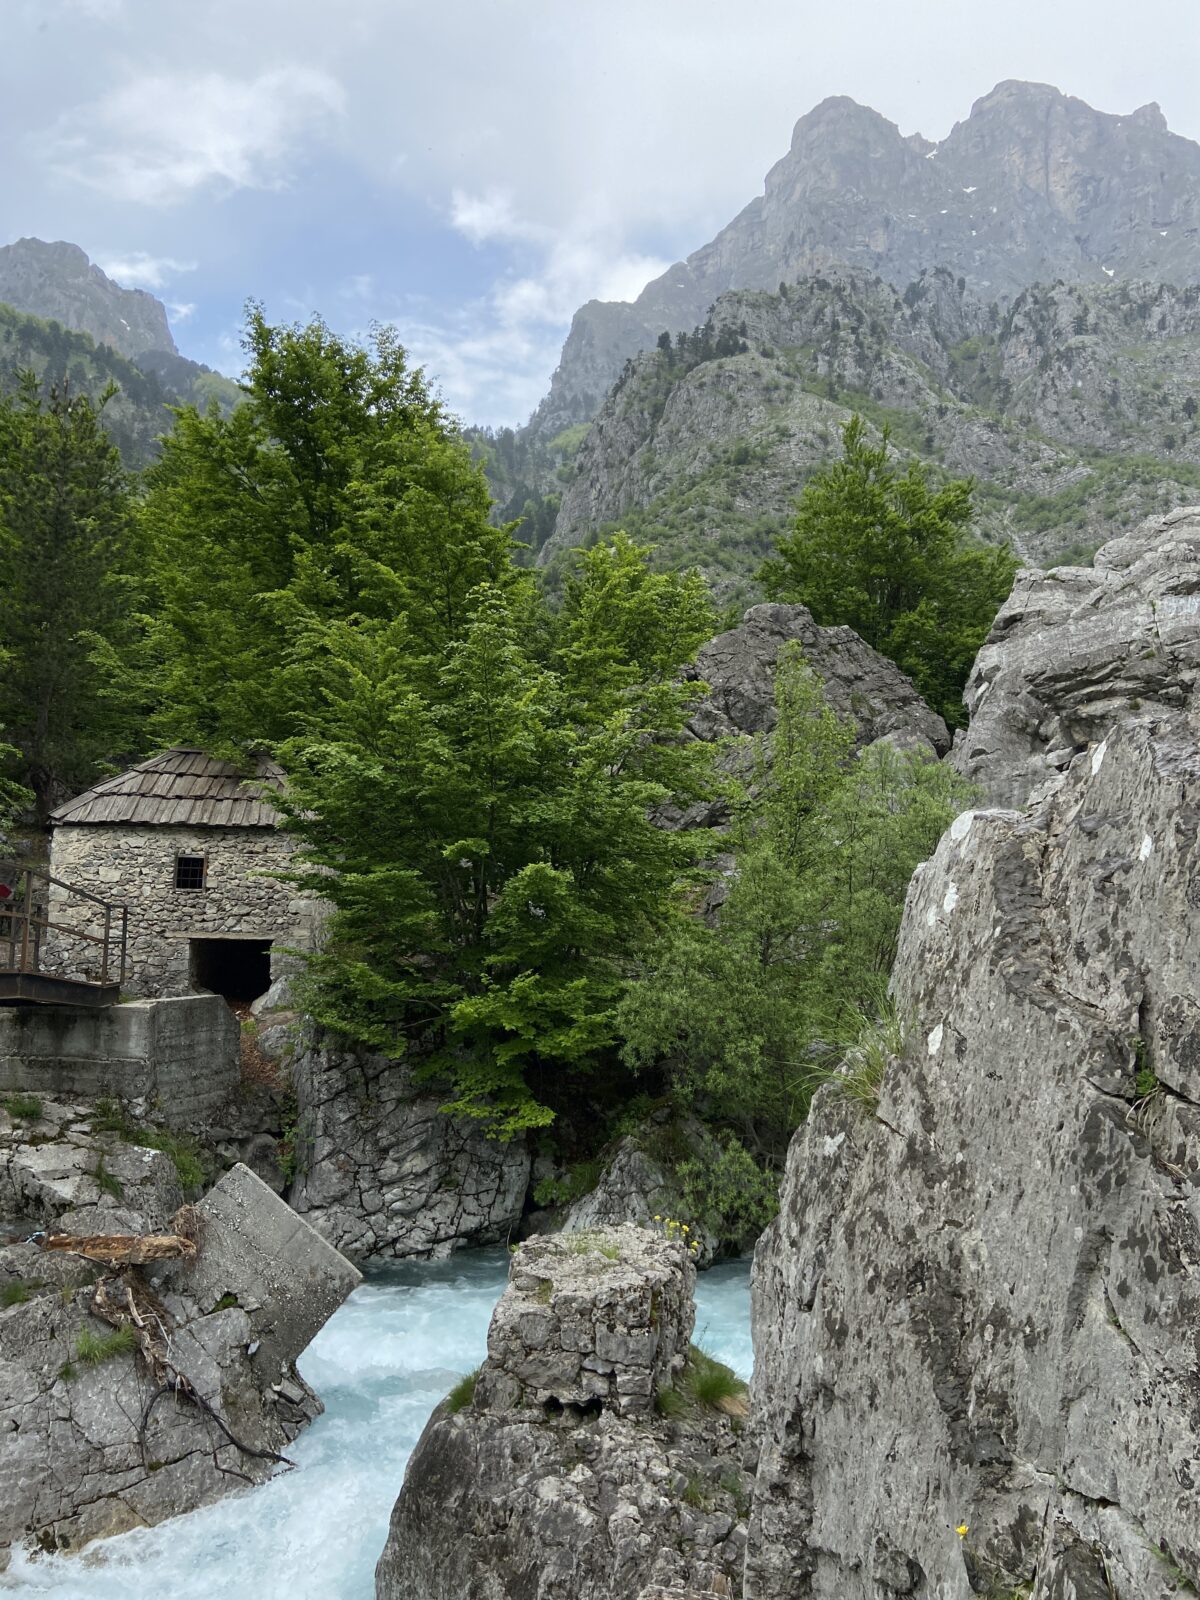 Wandern in Albanien: Zum See Liqeni i Xhemës und zu einer alten Mühle